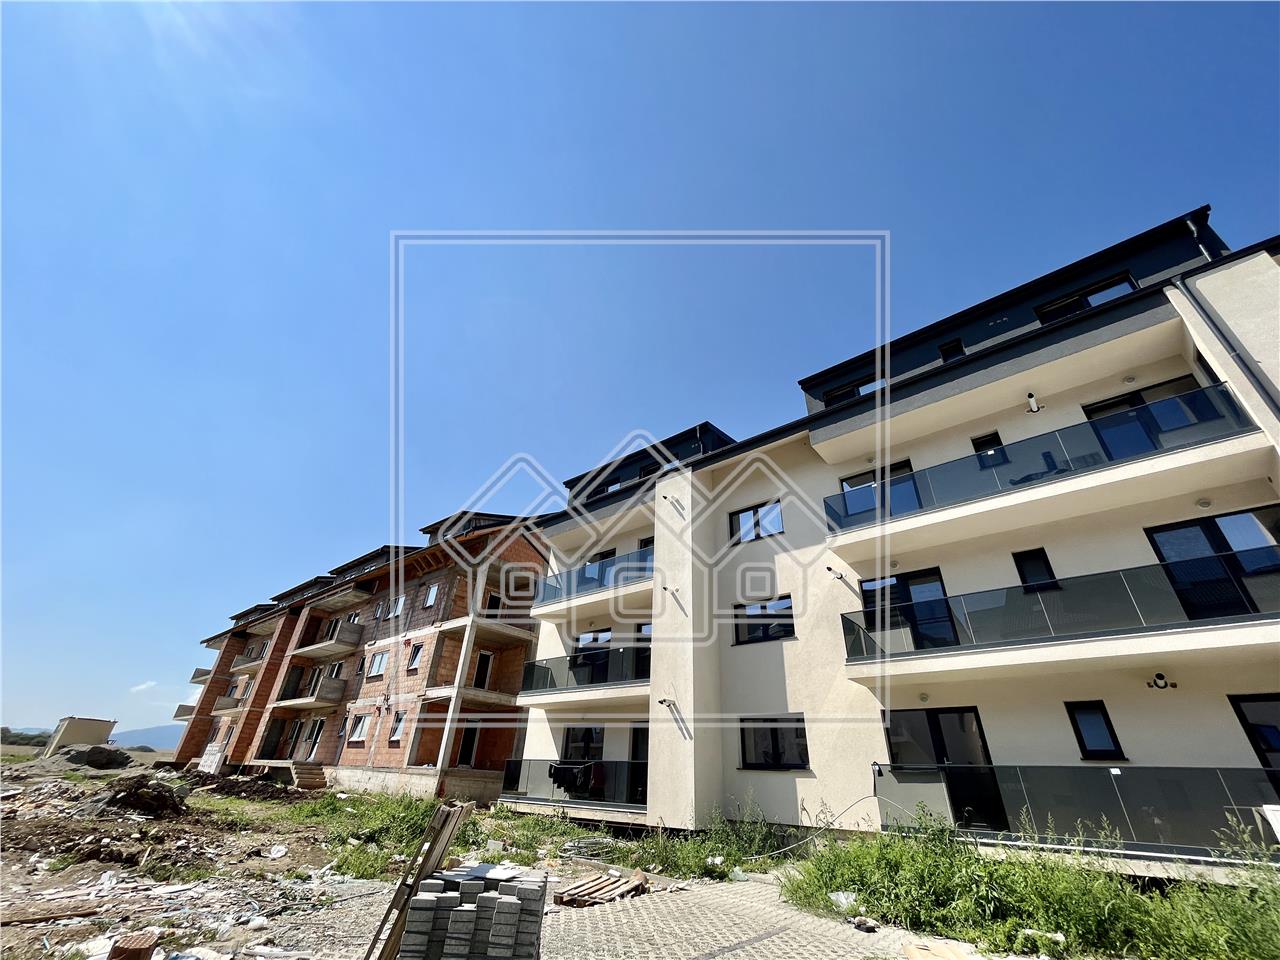 Apartament de vanzare in Sibiu - zona Dna Stanca - 53 mpu - decomandat